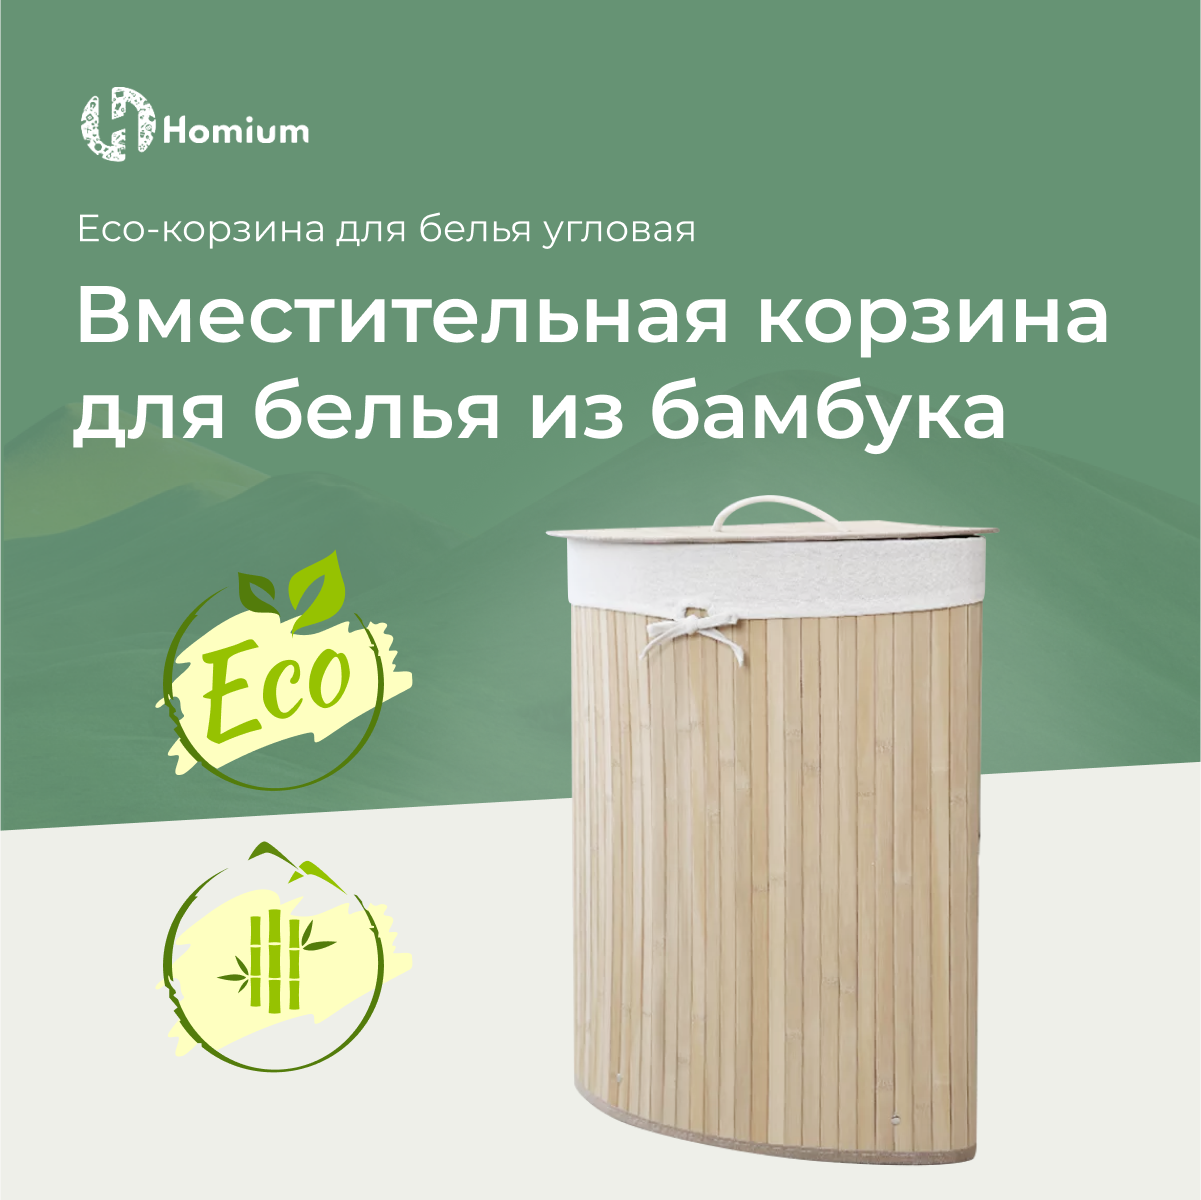 Корзина для белья из бамбука, корзина для хранения вещей и белья Homium for Home, Eco,35*35*60см, угловая